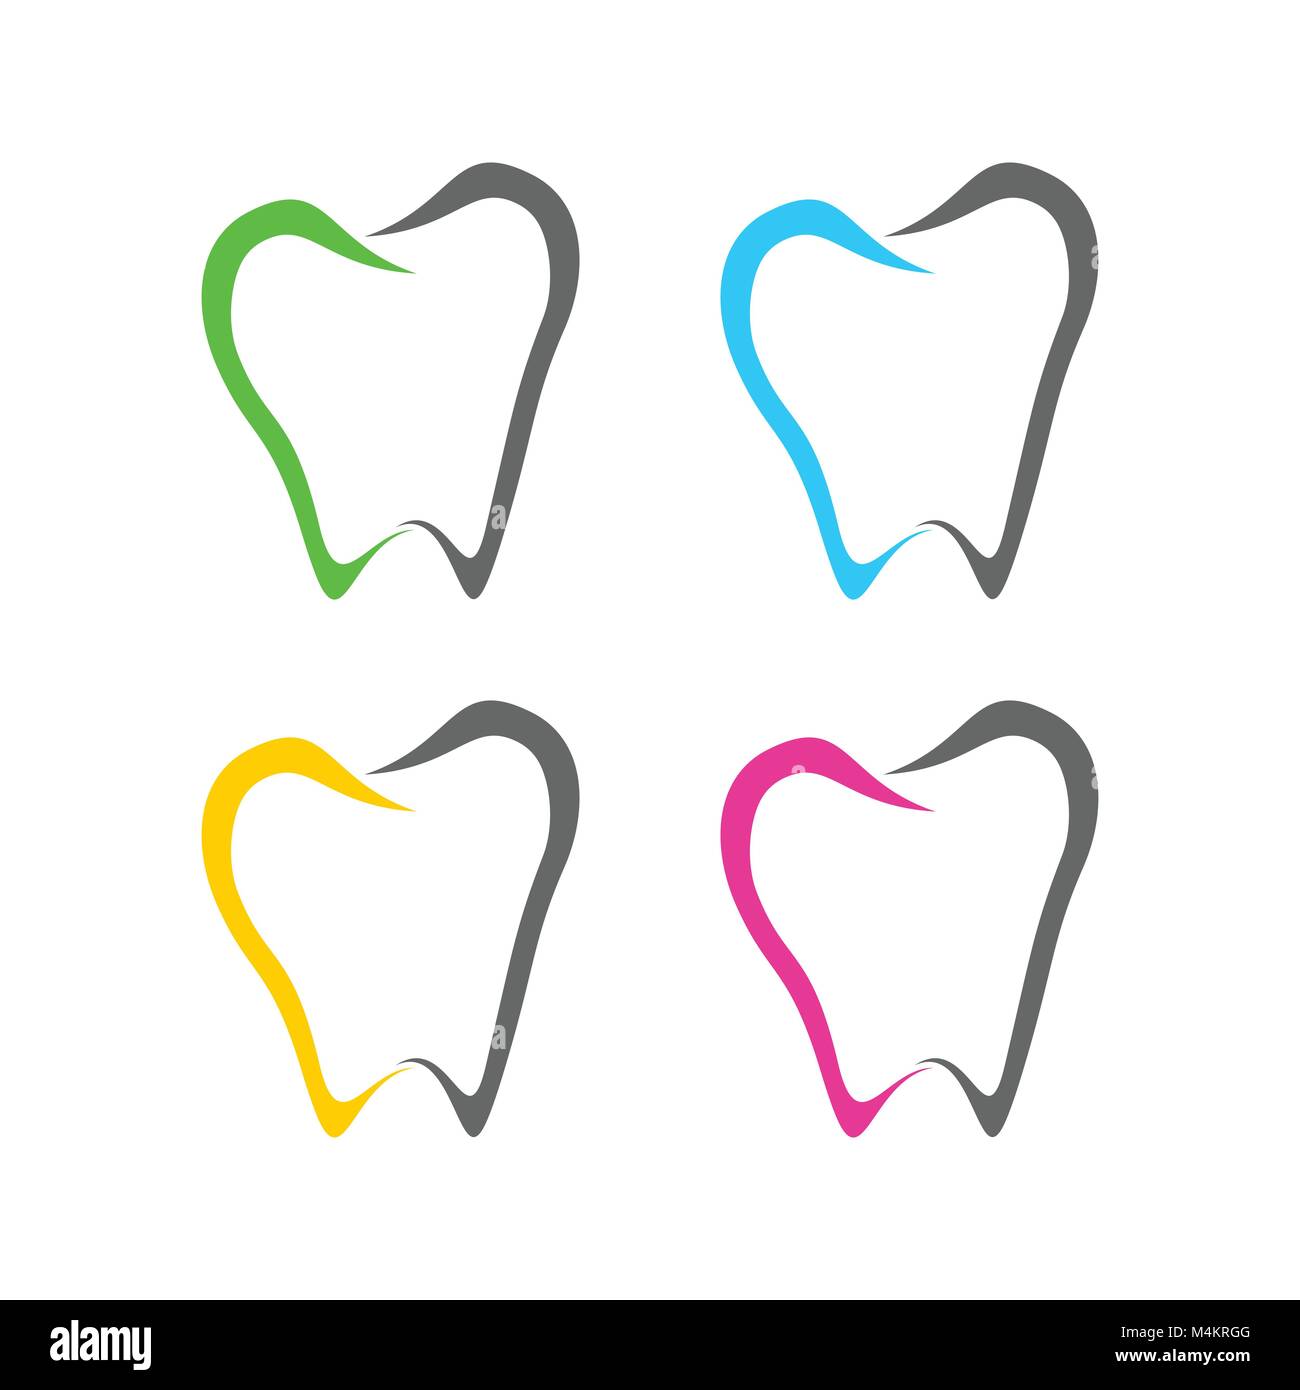 Abstract dente dentale Line Art icone simbolo Vector Graphic Logo Design Illustrazione Vettoriale